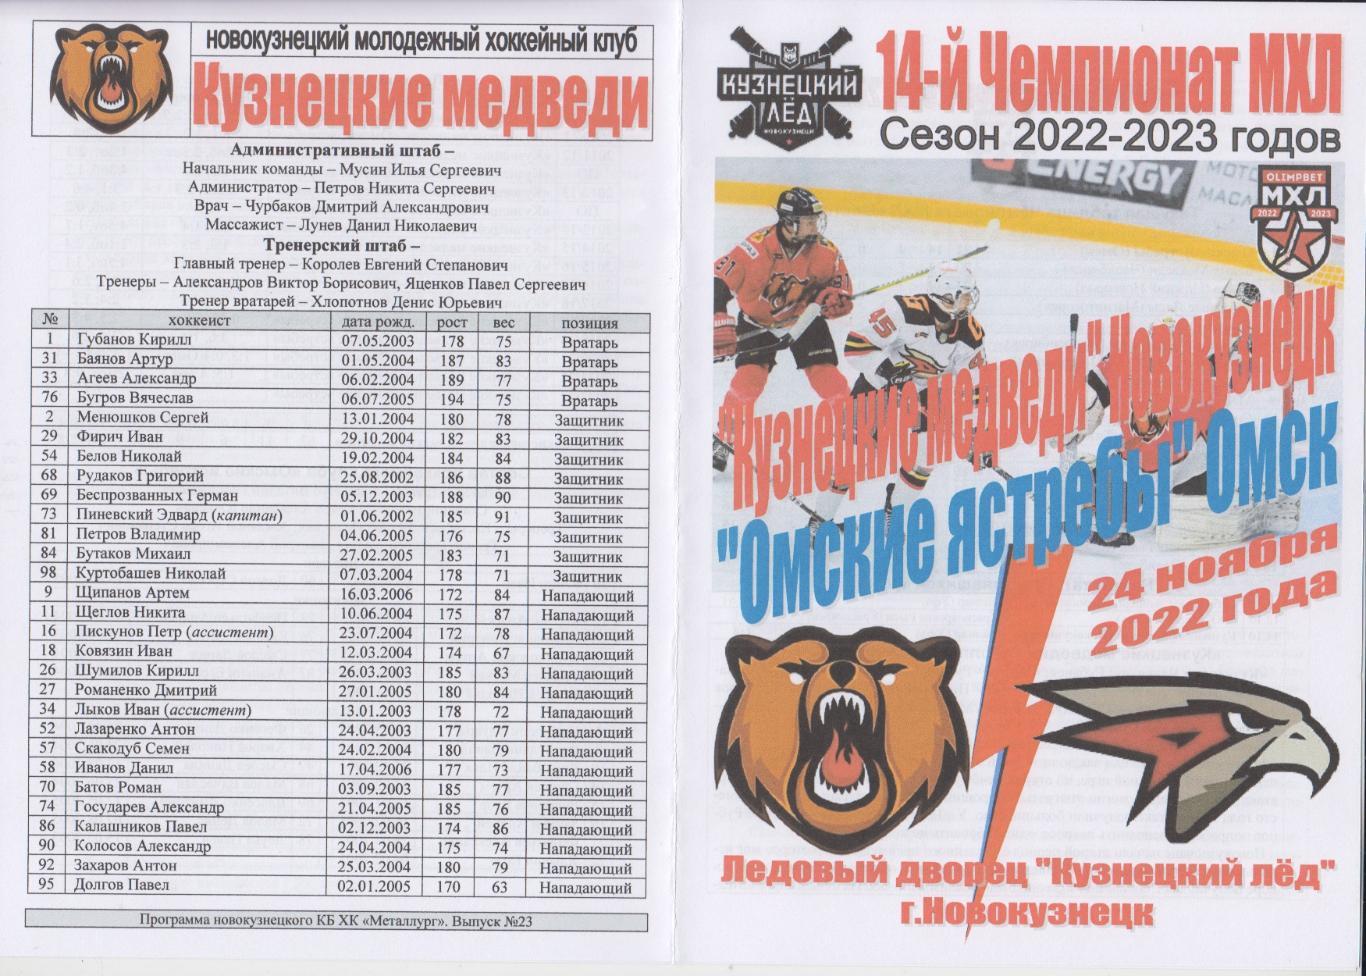 Кузнецкие медведи(Новокузнецк) - Омские ястребы(Омск) - 2022/23